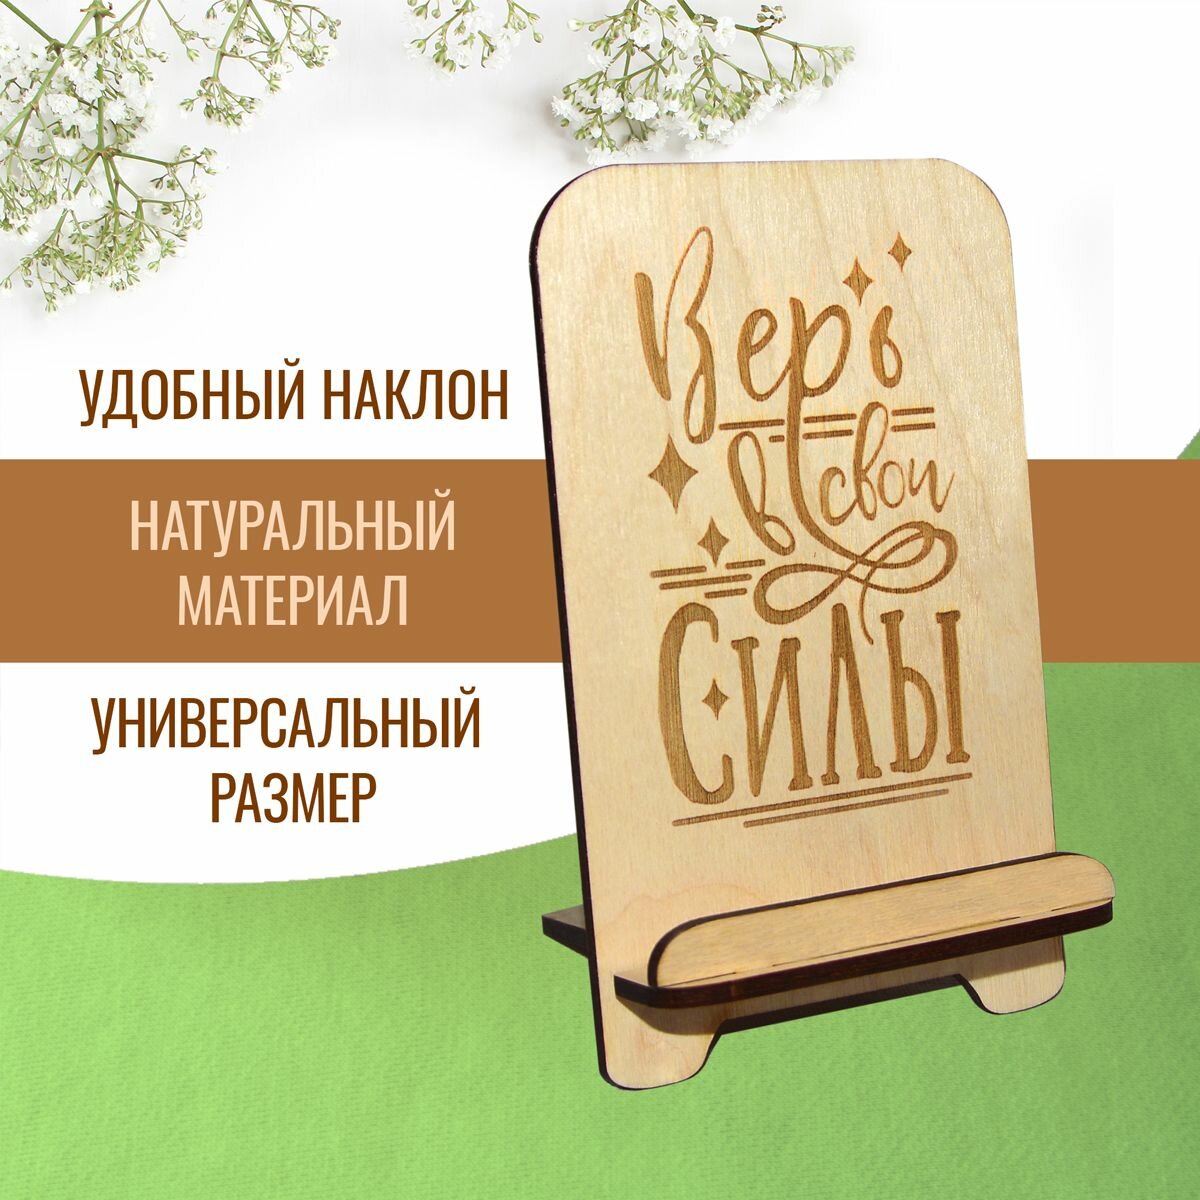 Подставка для телефона держатель для смартфона деревянный с мотивирующей надписью "Верь в свои силы"